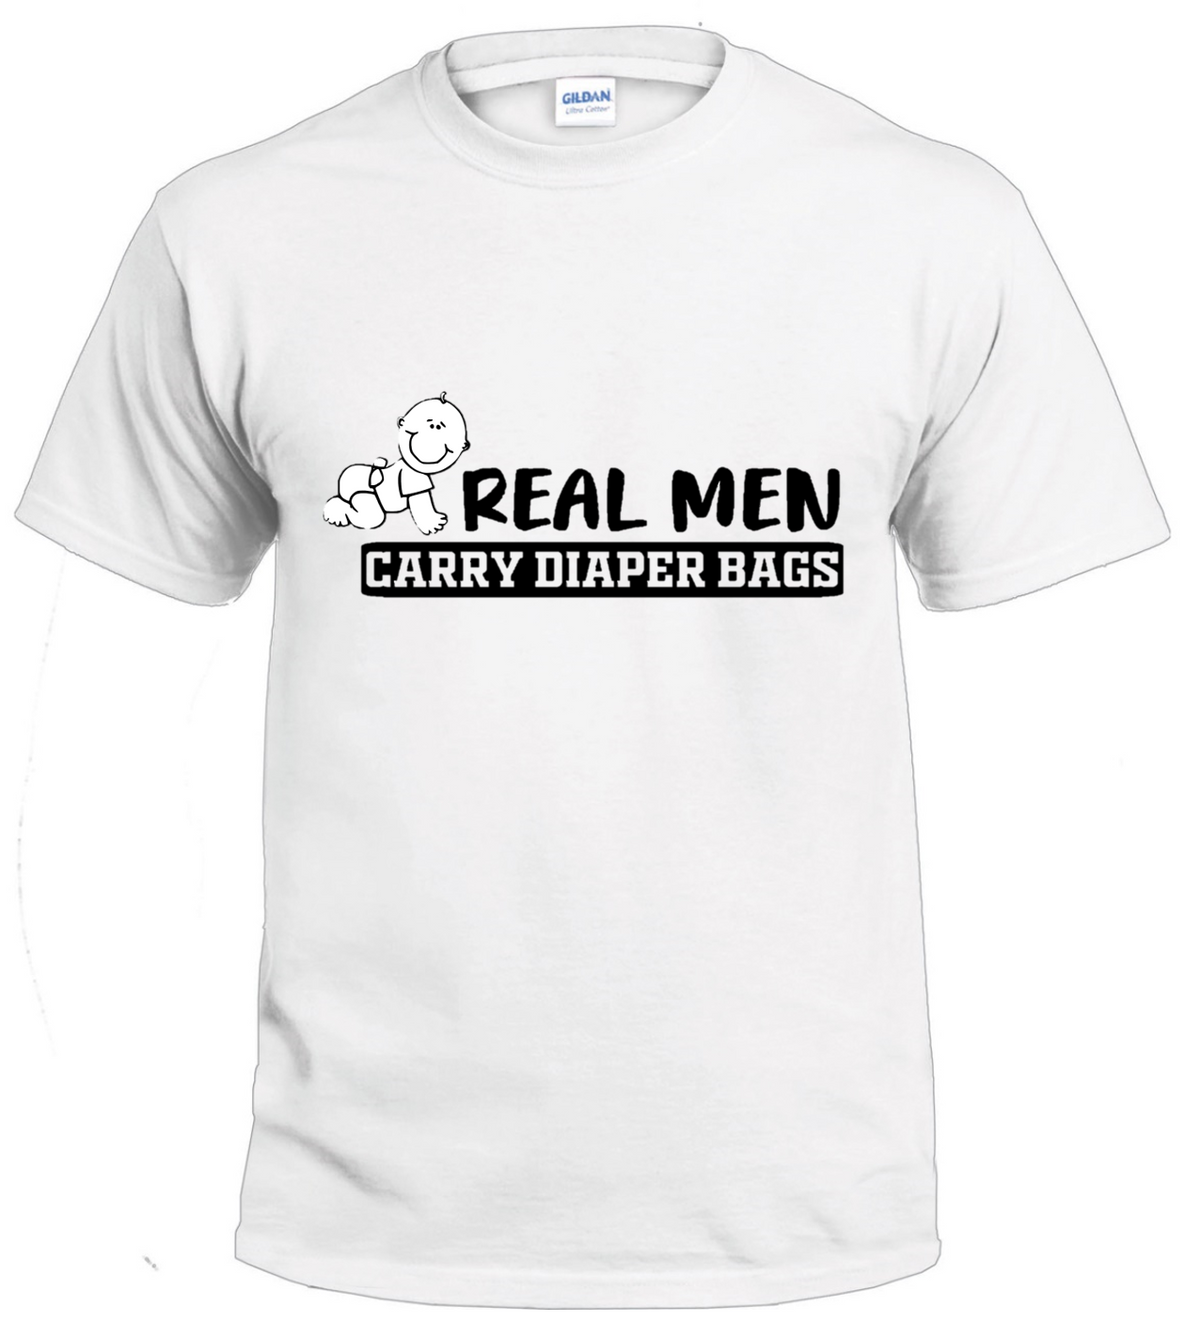 Real Men Carry Diaper bags t-shirt